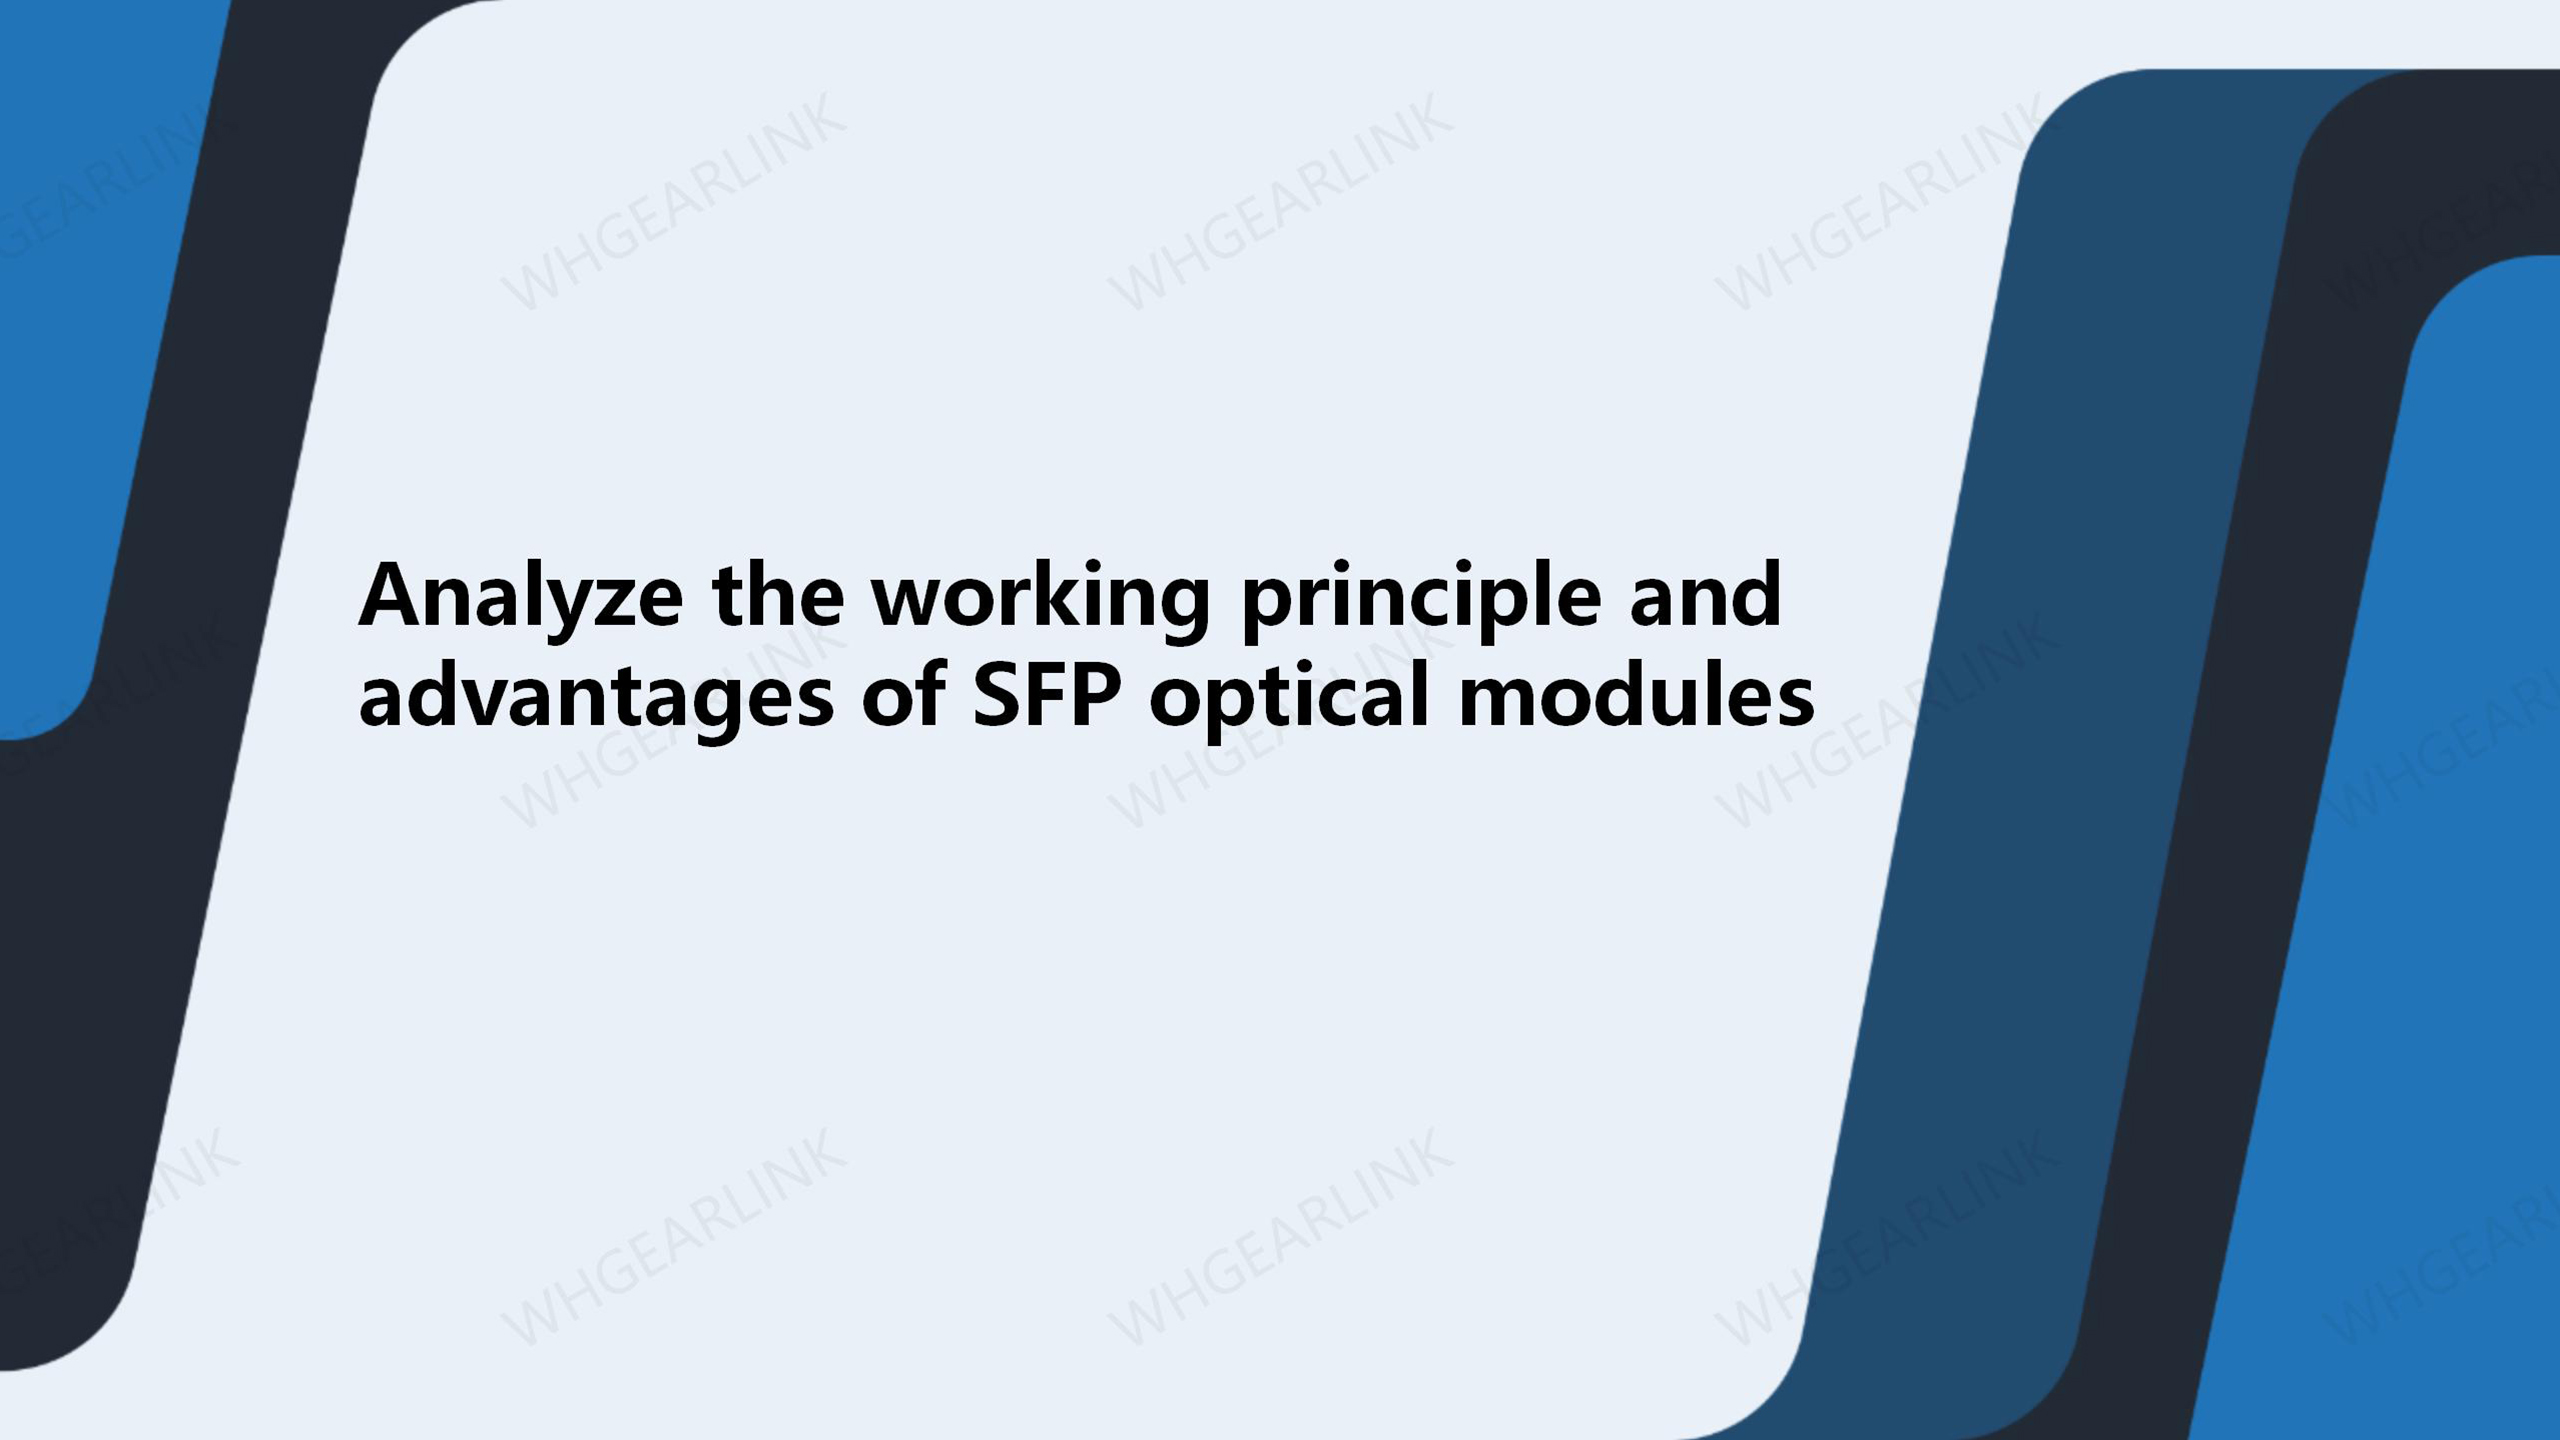 SFP_optical_modules.jpg